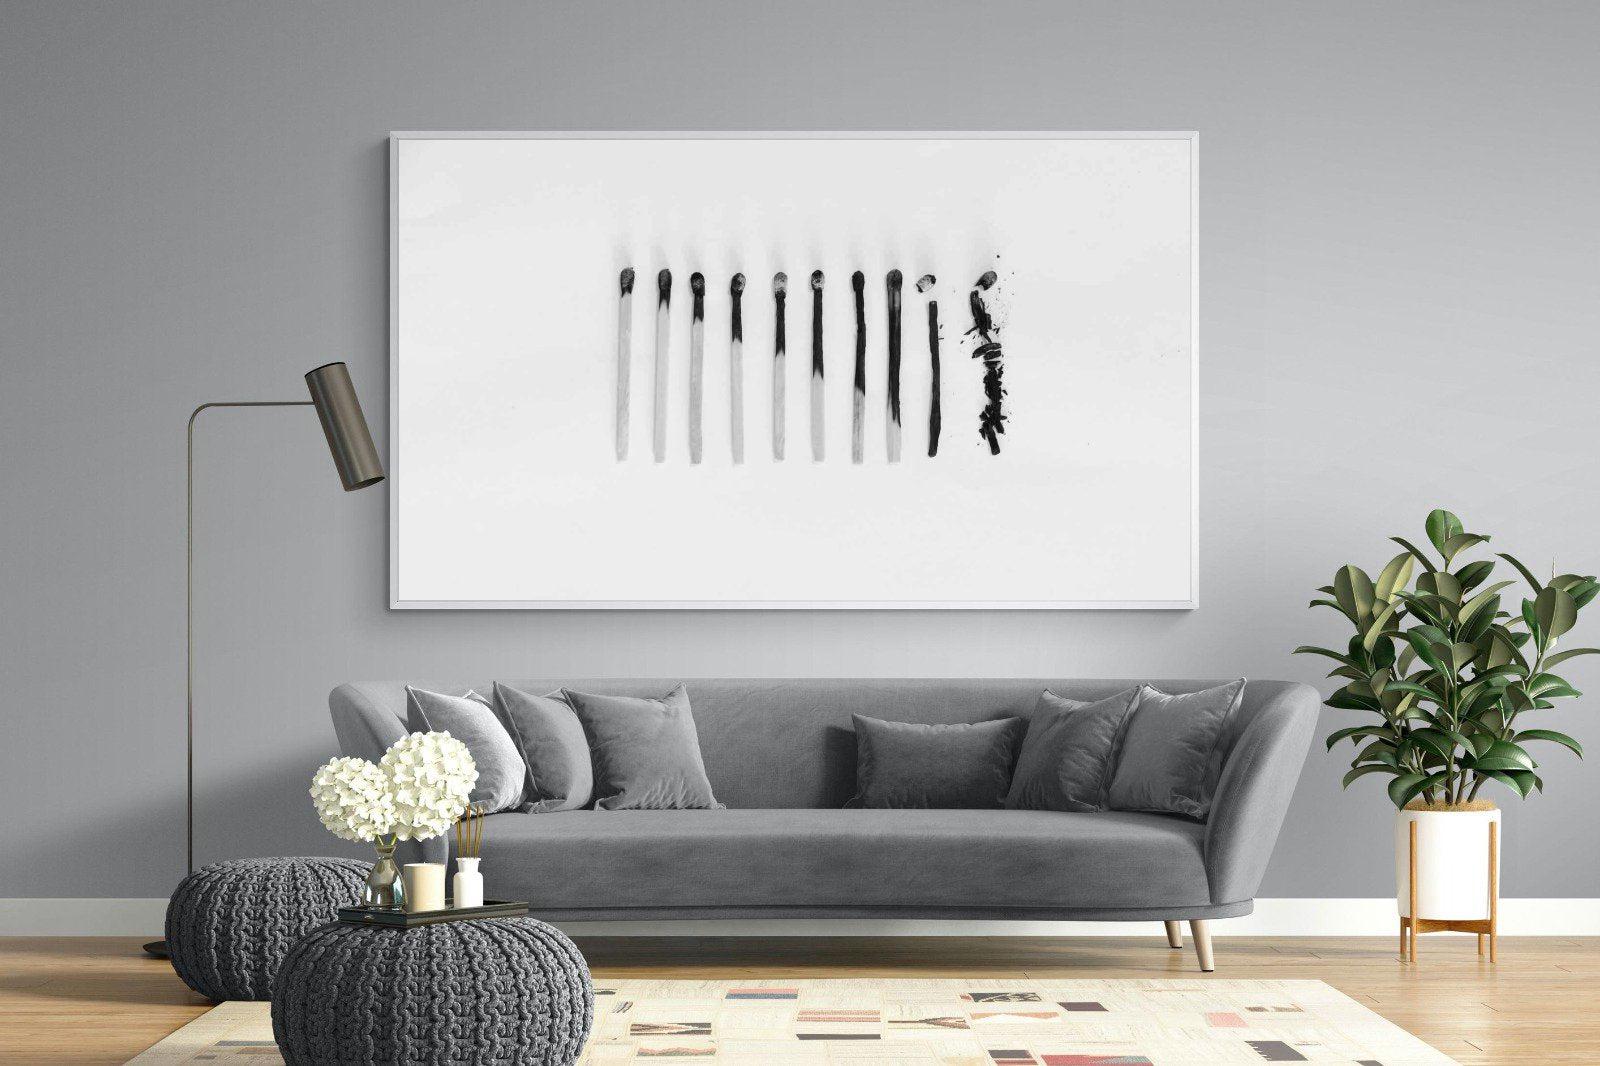 Matchsticks-Wall_Art-220 x 130cm-Mounted Canvas-White-Pixalot